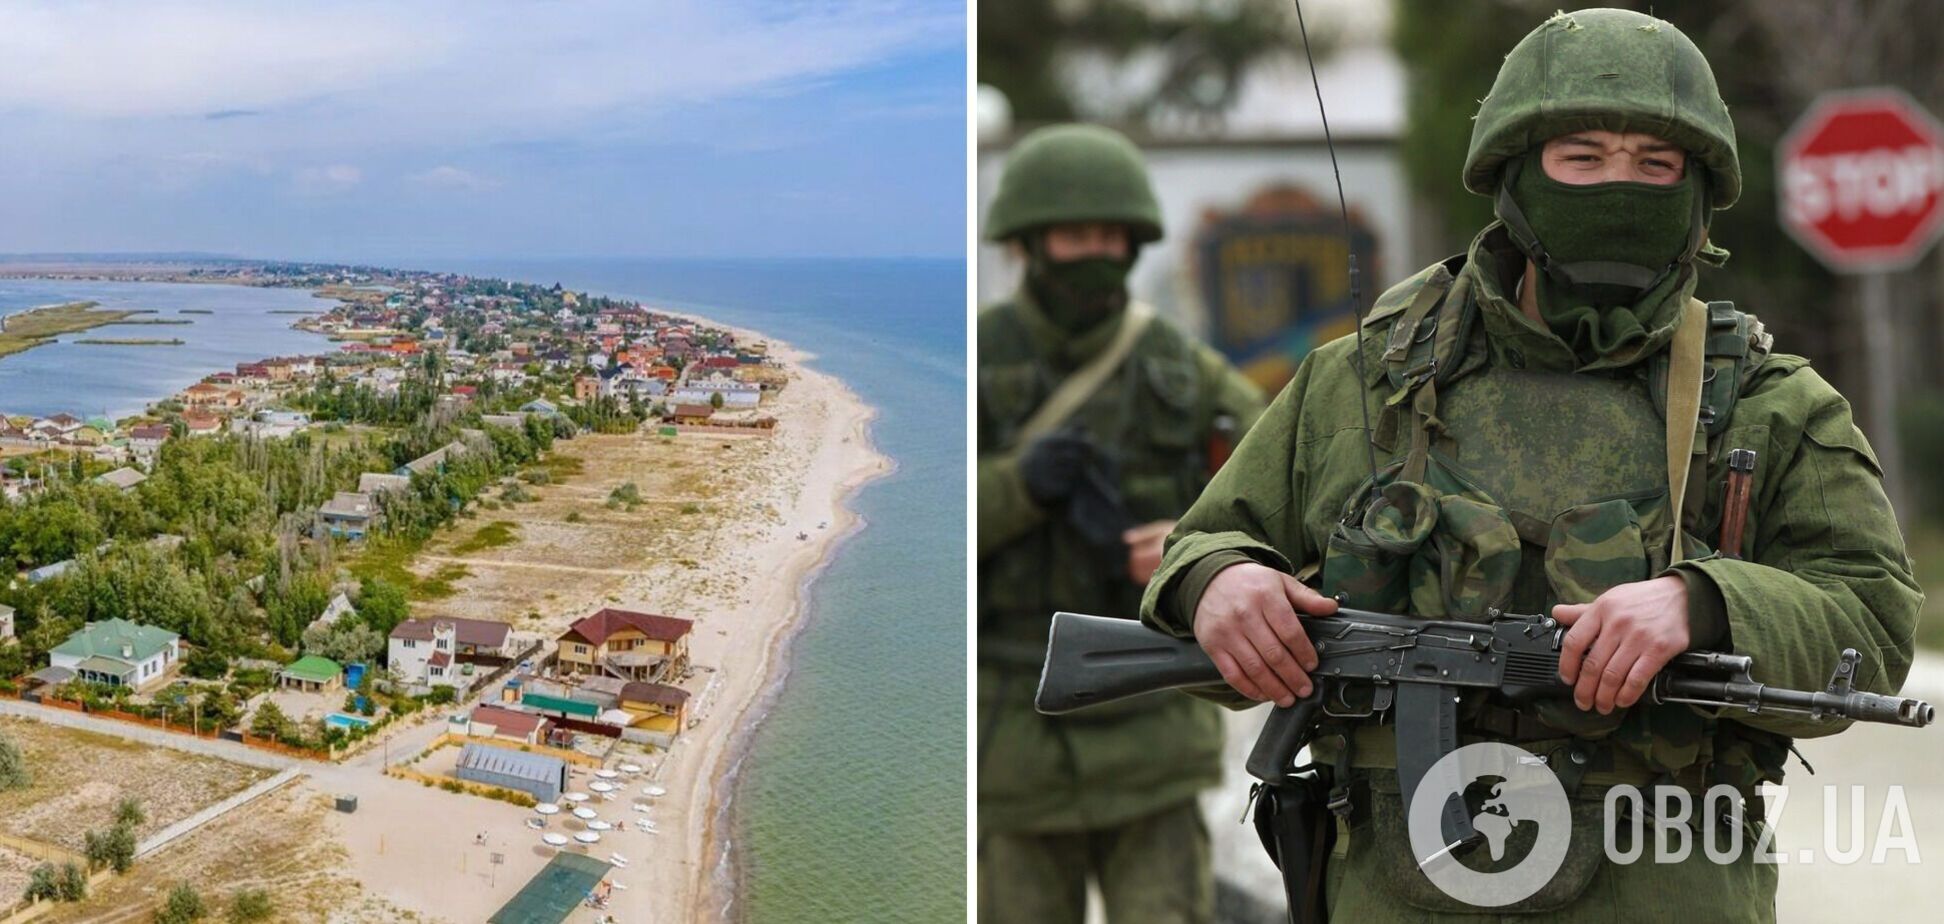 На Донетчине задержали российских дезертиров: хотели отдохнуть от фронта возле моря